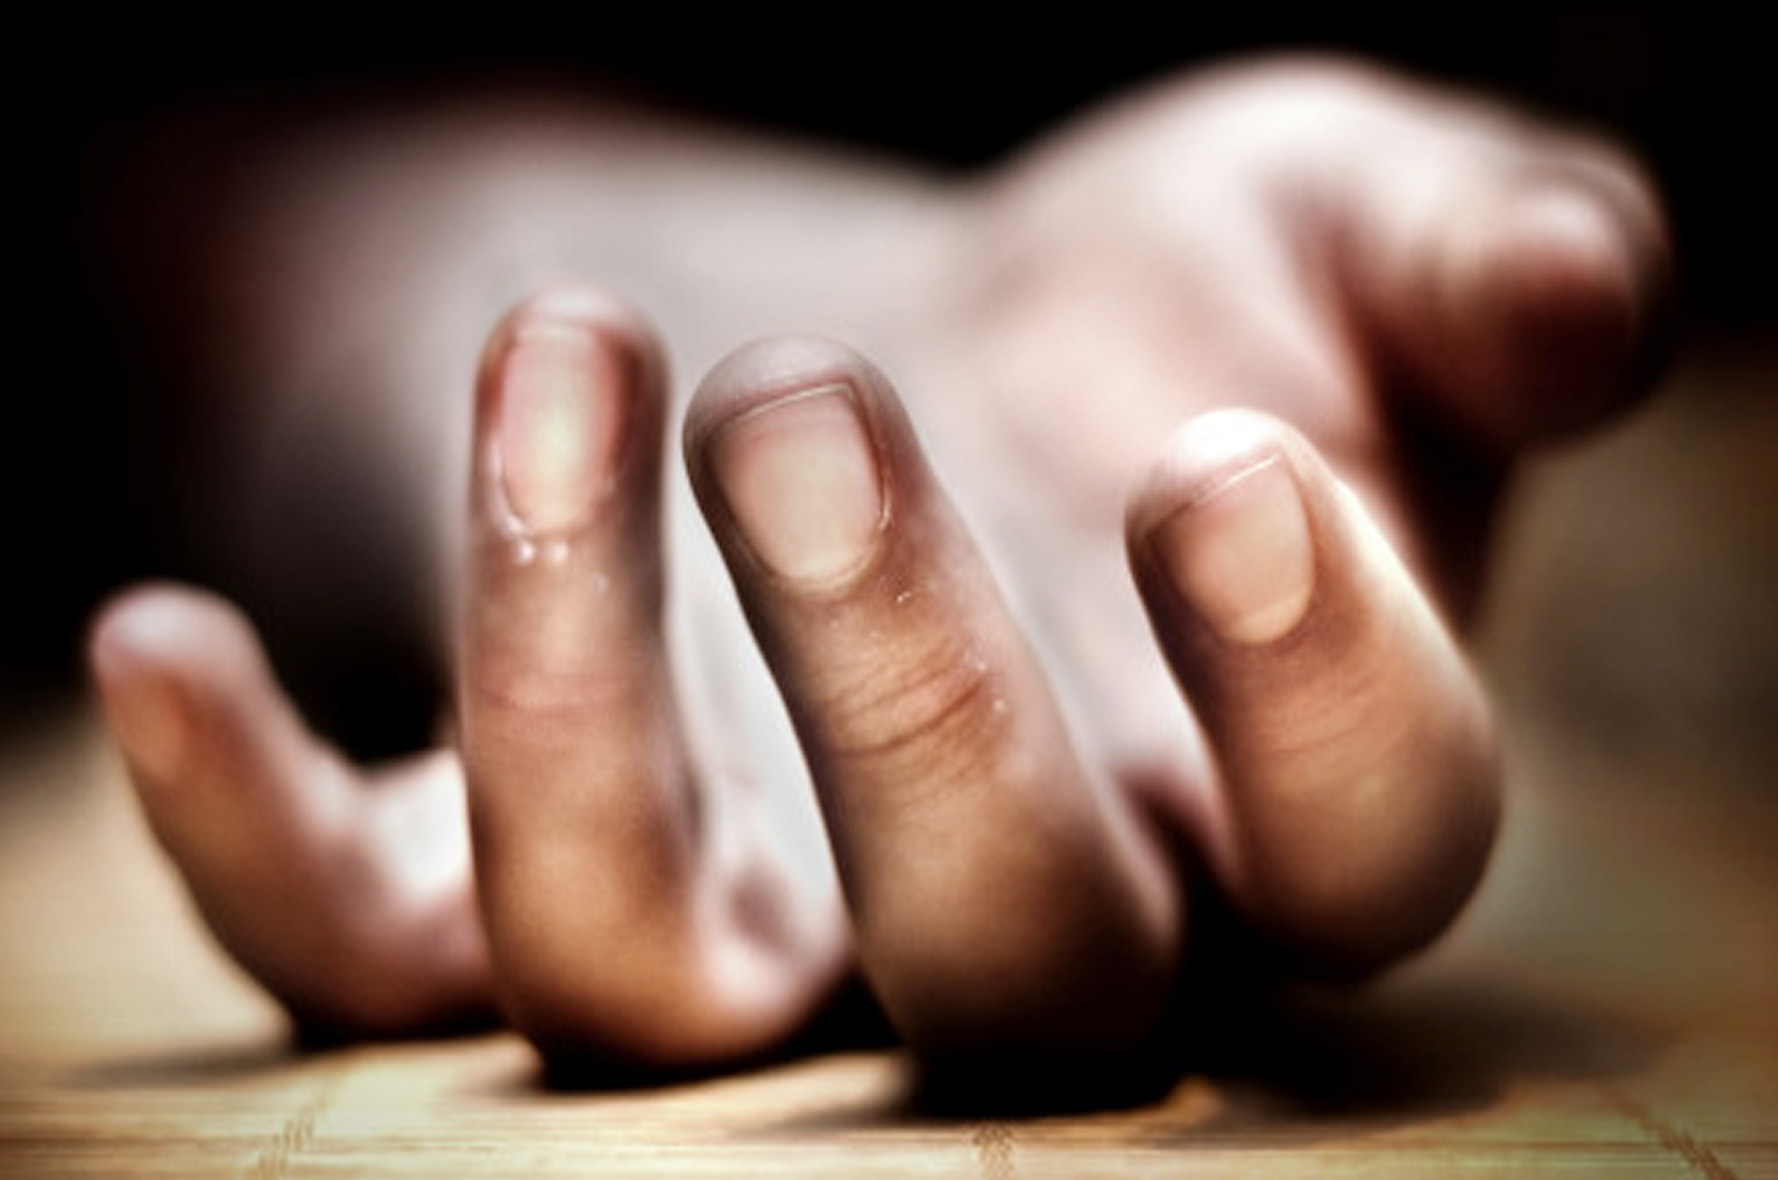 Έβρος: 54χρονος άνδρας αυτοκτόνησε χρησιμοποιώντας φιάλη υγραερίου